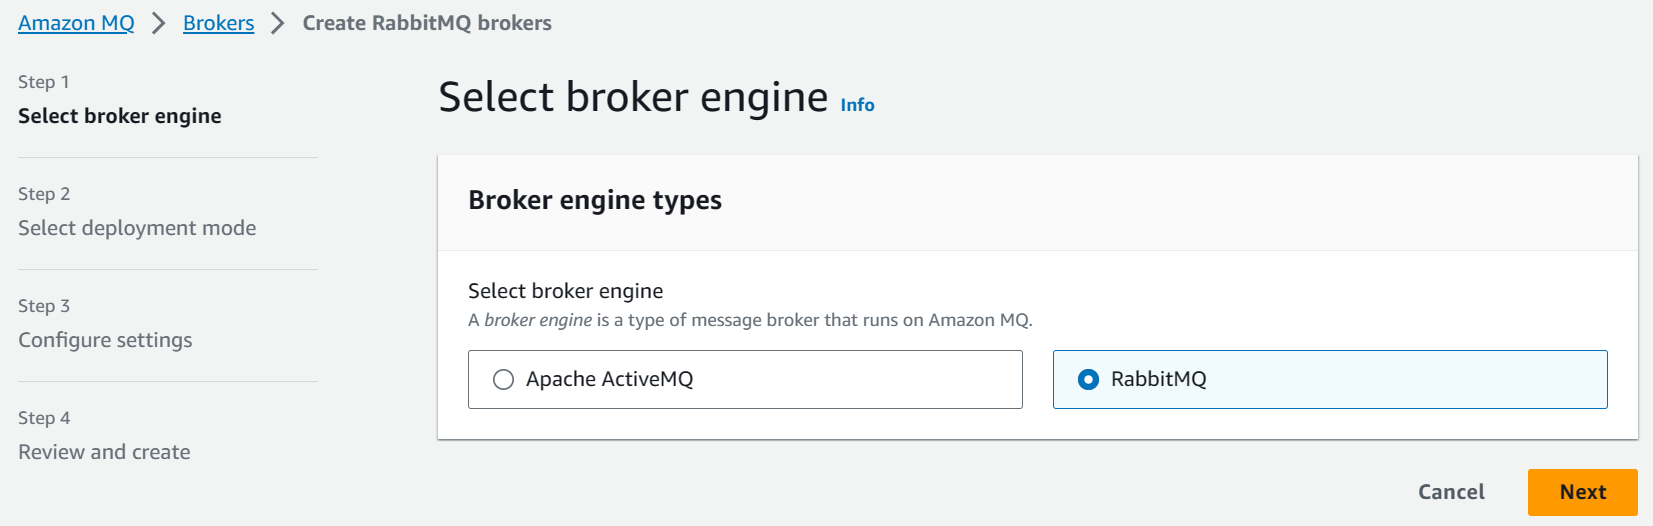 Create a new Amazon MQ broker using the RabbitMQ broker type.